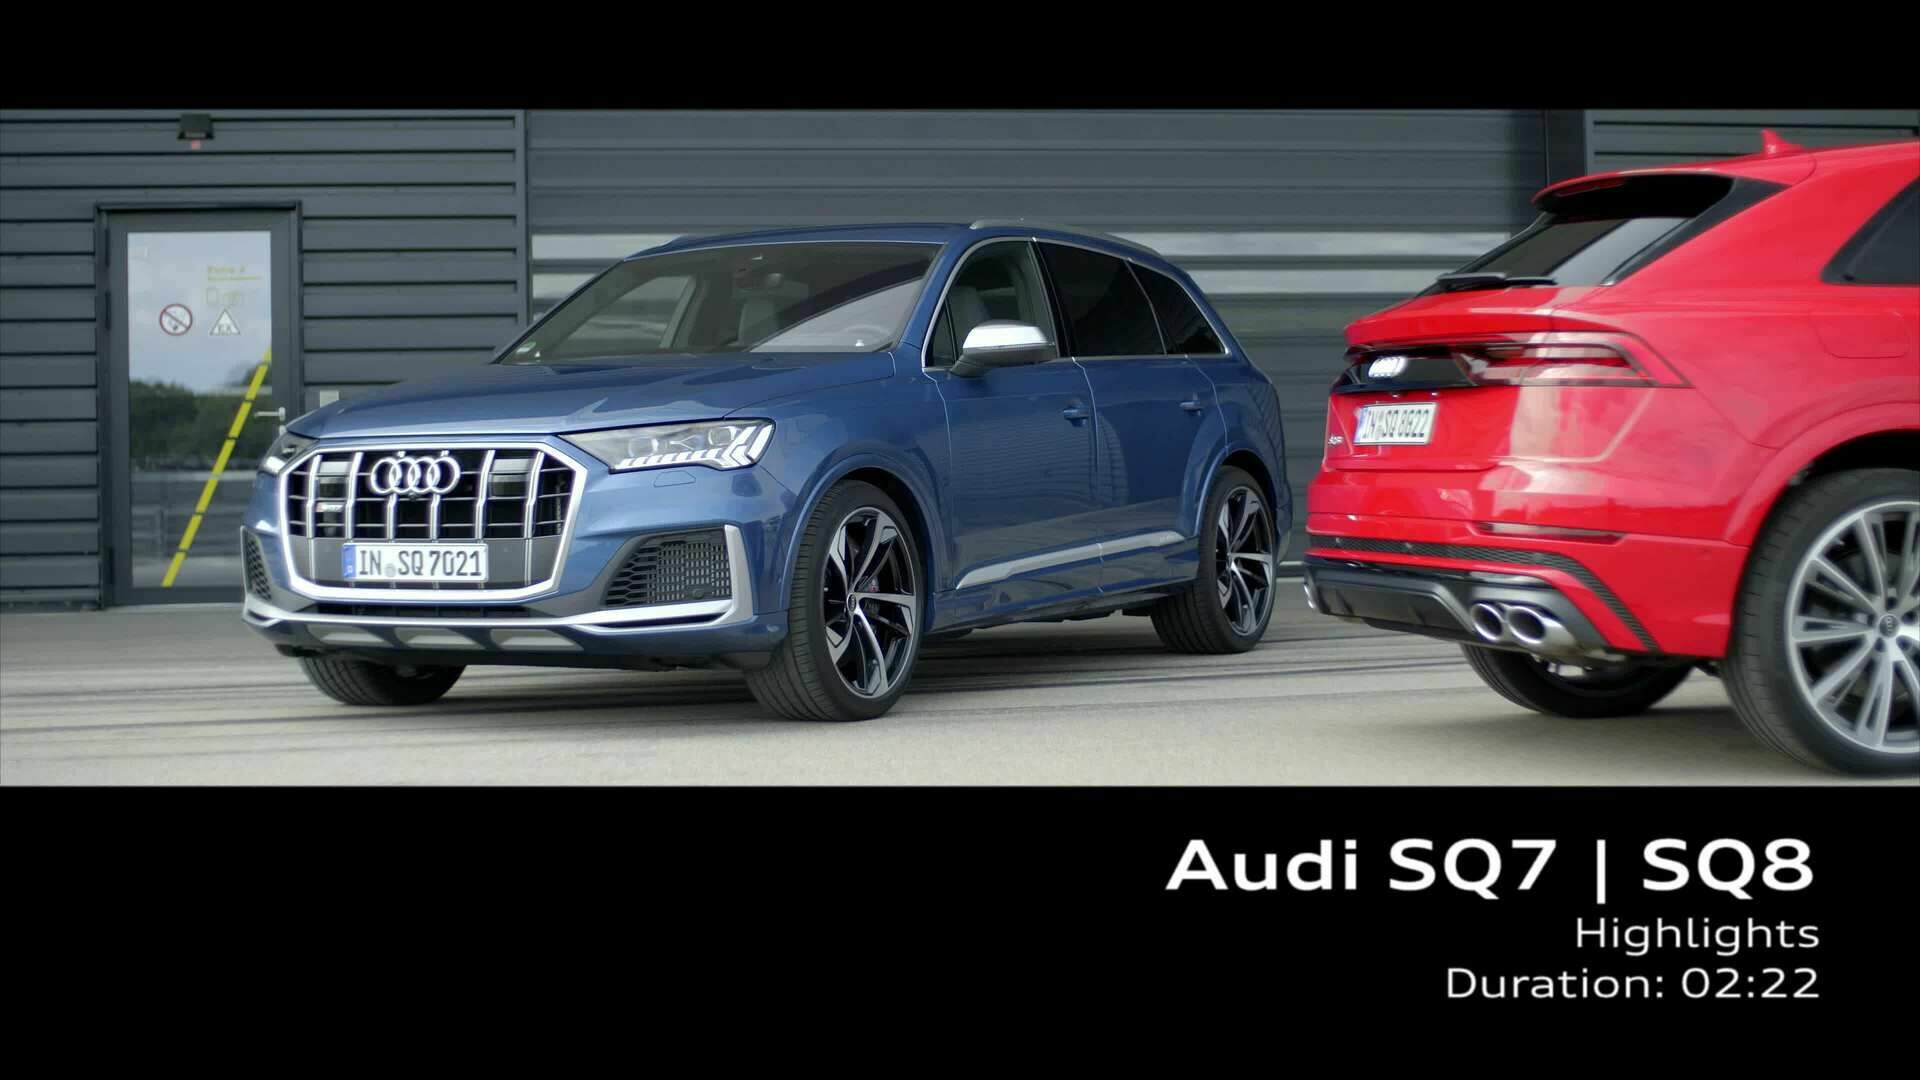 Audi SQ7 / SQ8 – Highlights